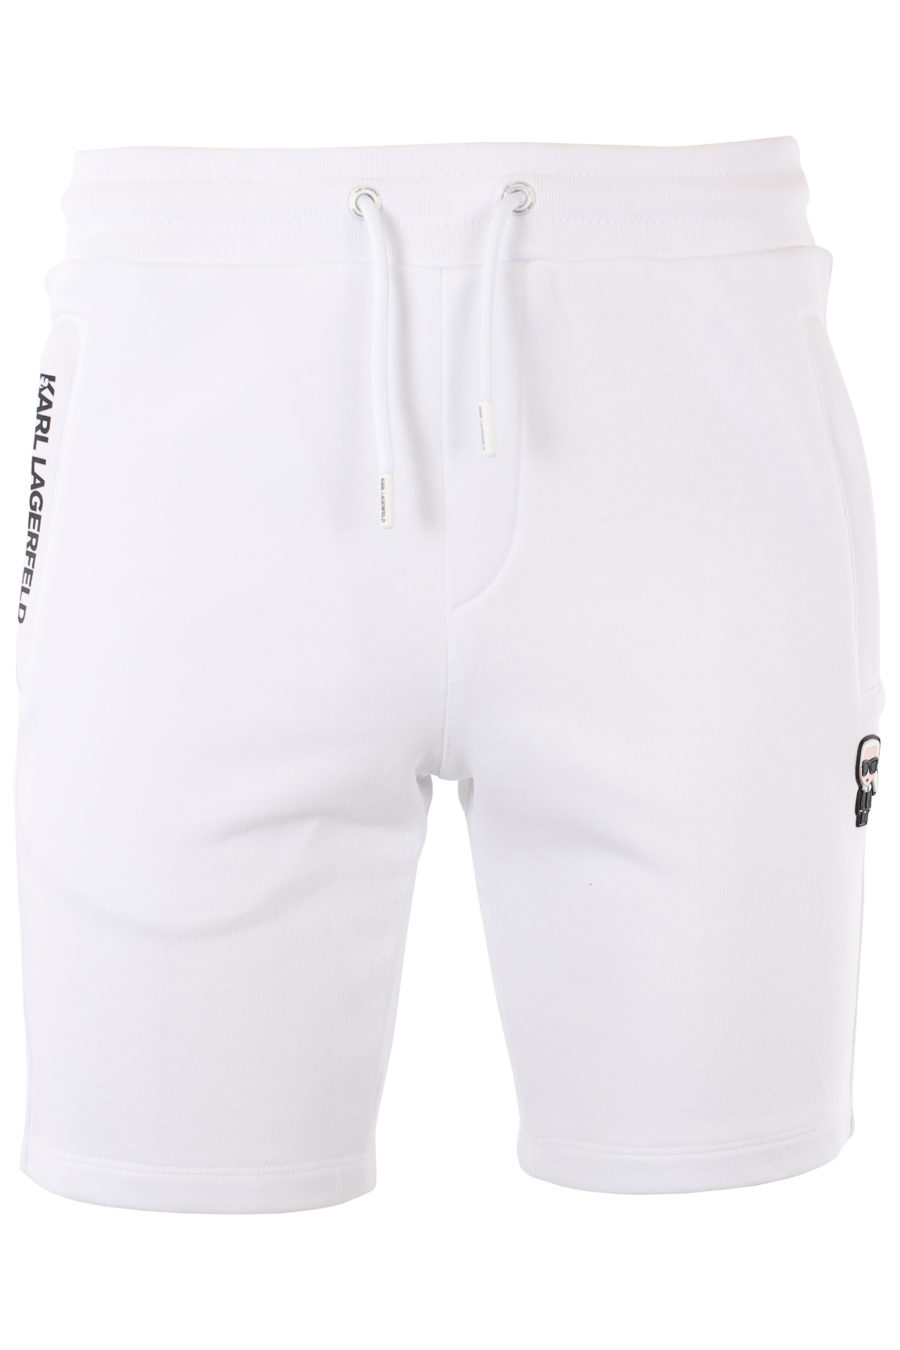 Pantalón corto blanco con logo de goma - IMG 1014